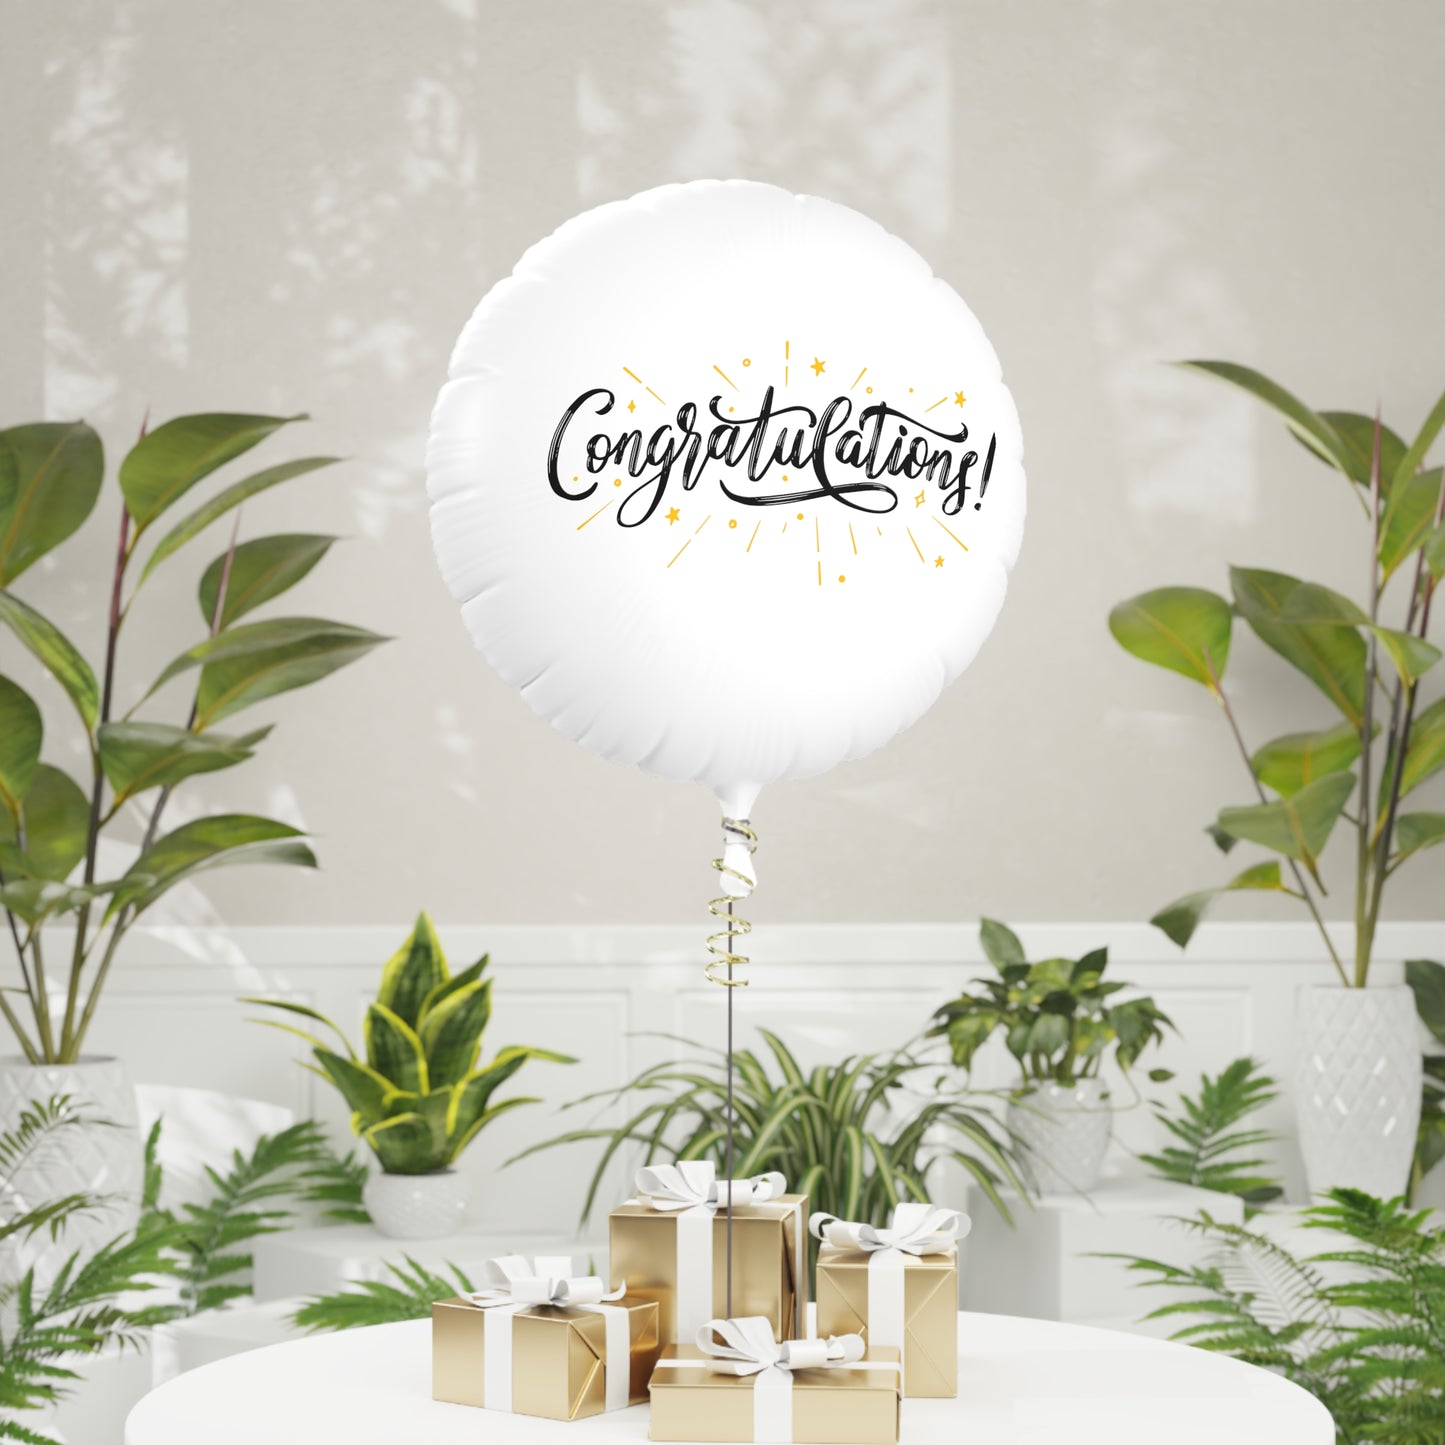 "Congratulations" Mylar Helium Balloon, Size 22", Helium-Ready Round Balloon